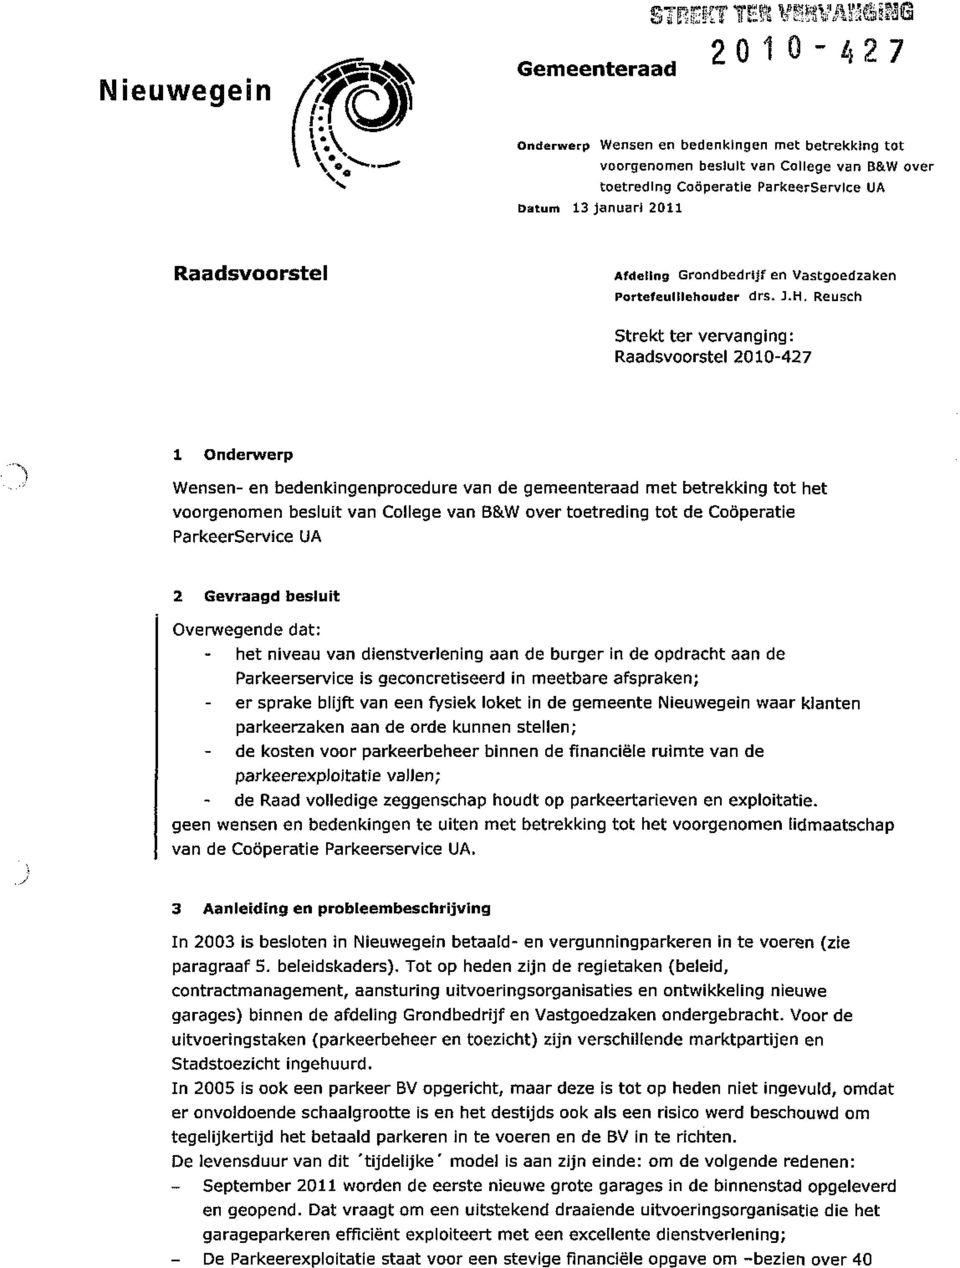 Reusch Strekt ter vervanging: Raadsvoorstel 2010-427 1 Onderwerp Wensen- en bedenkingenprocedure van de gemeenteraad met betrekking tot het voorgenomen besluit van College van B&W over toetreding tot